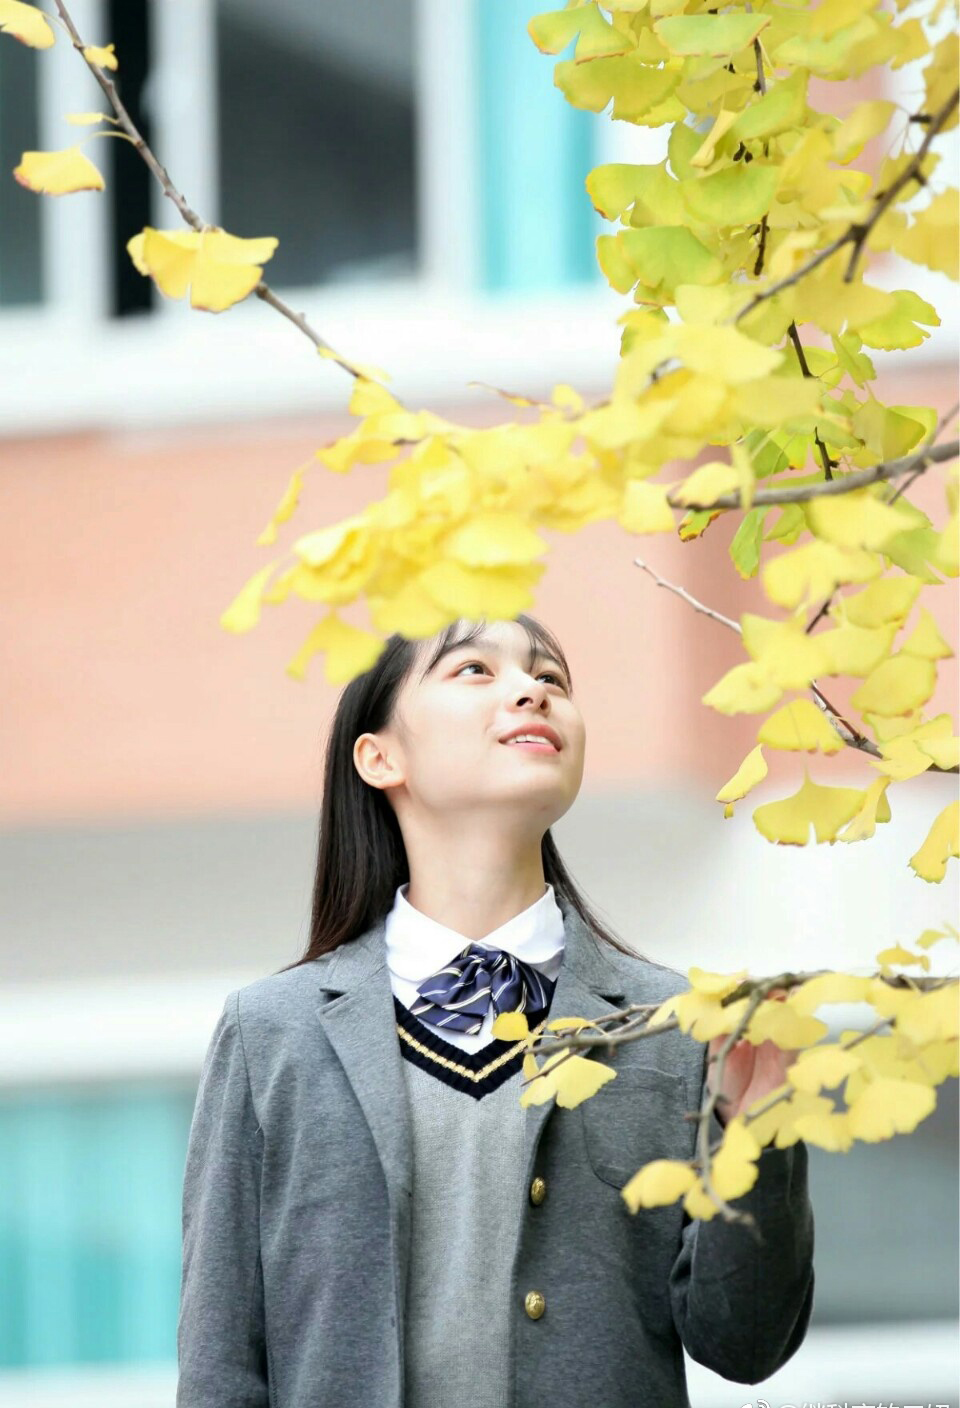 武汉水果湖高中的新校服刷屏,摆脱传统校服,媲美日韩校服